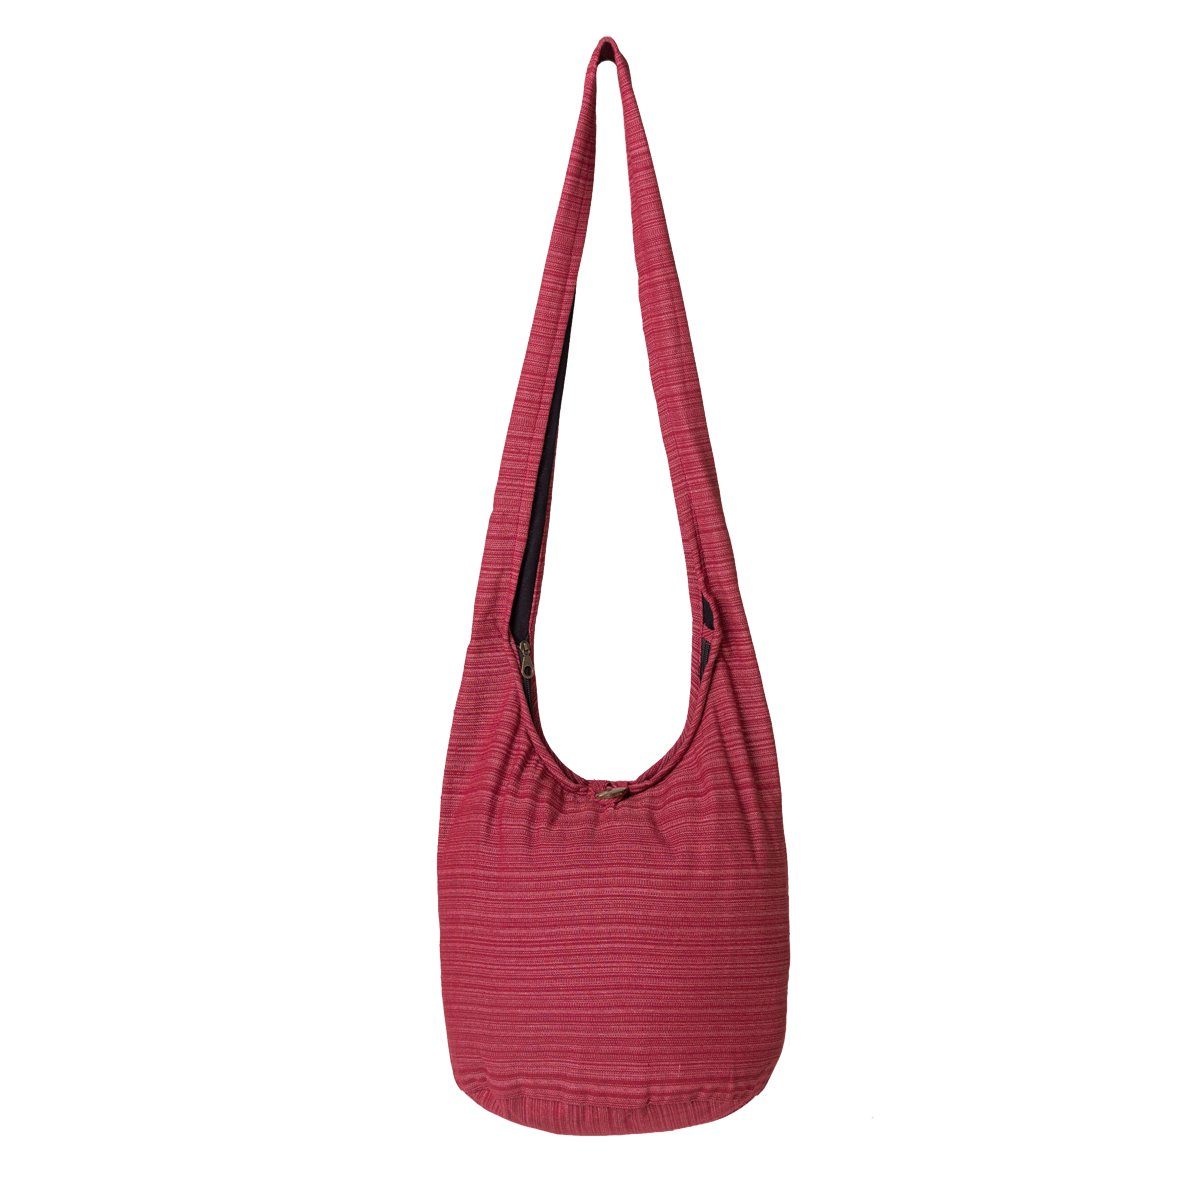 PANASIAM Wickeltasche Schulterbeutel Lini Beuteltasche aus 100% Baumwolle Schultertasche, In 2 Größen auch als Strandtasche Yogatasche oder Handtasche nutzbar bordeux rot